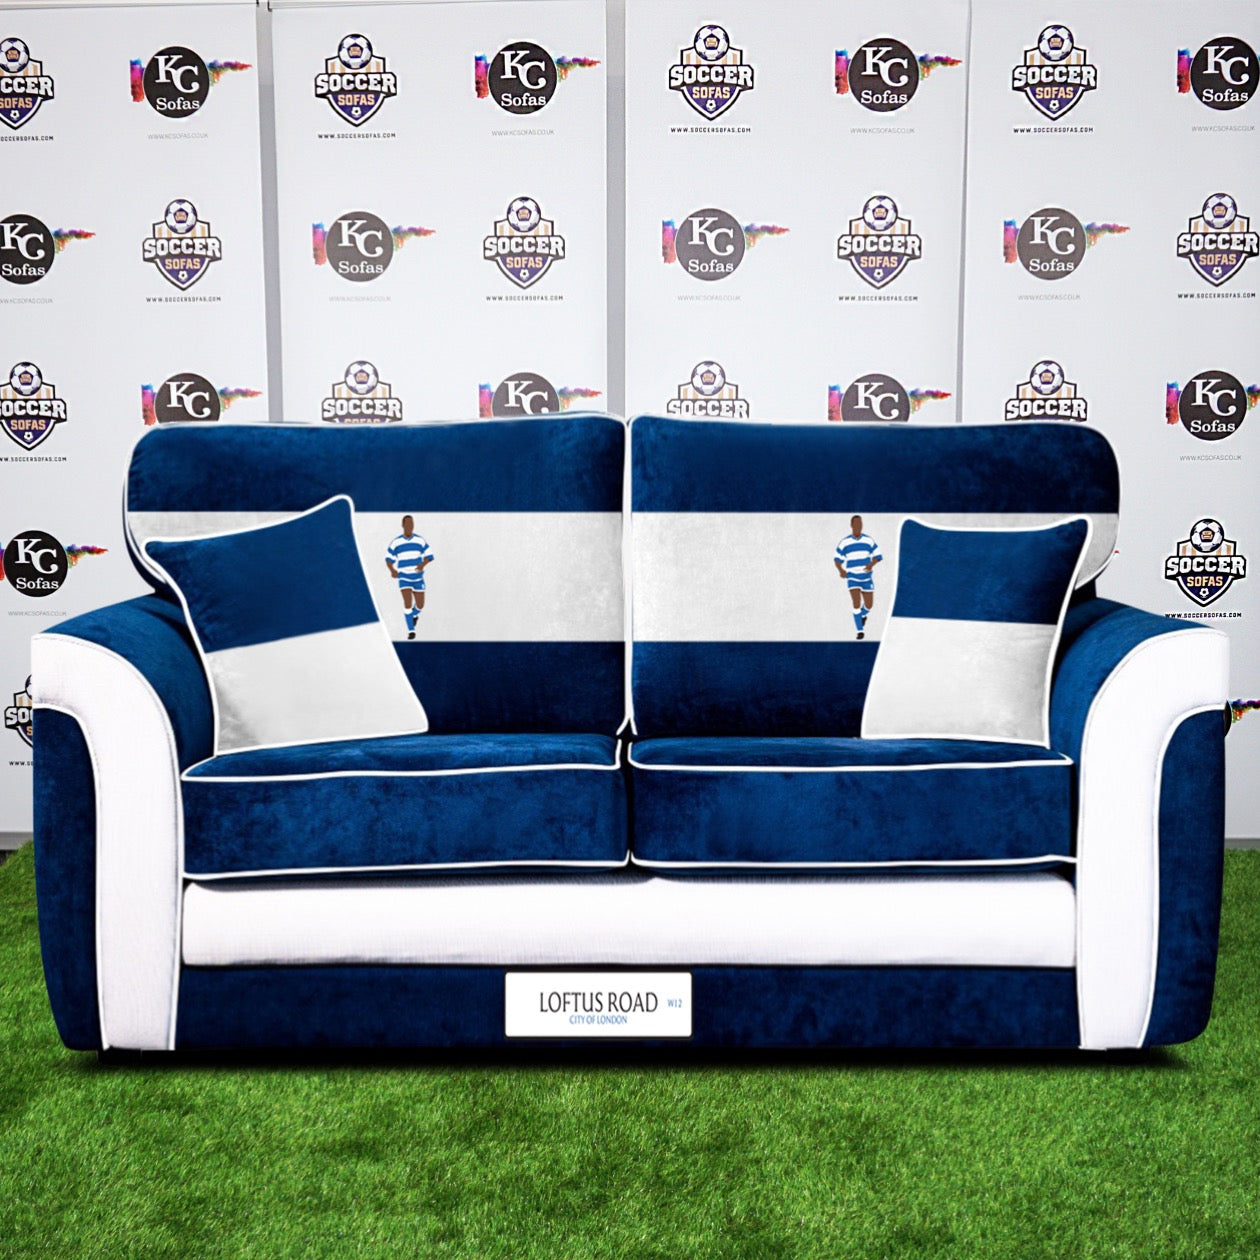 Loftus Road 3 Seater Sofa (Queens Park Rangers FC)